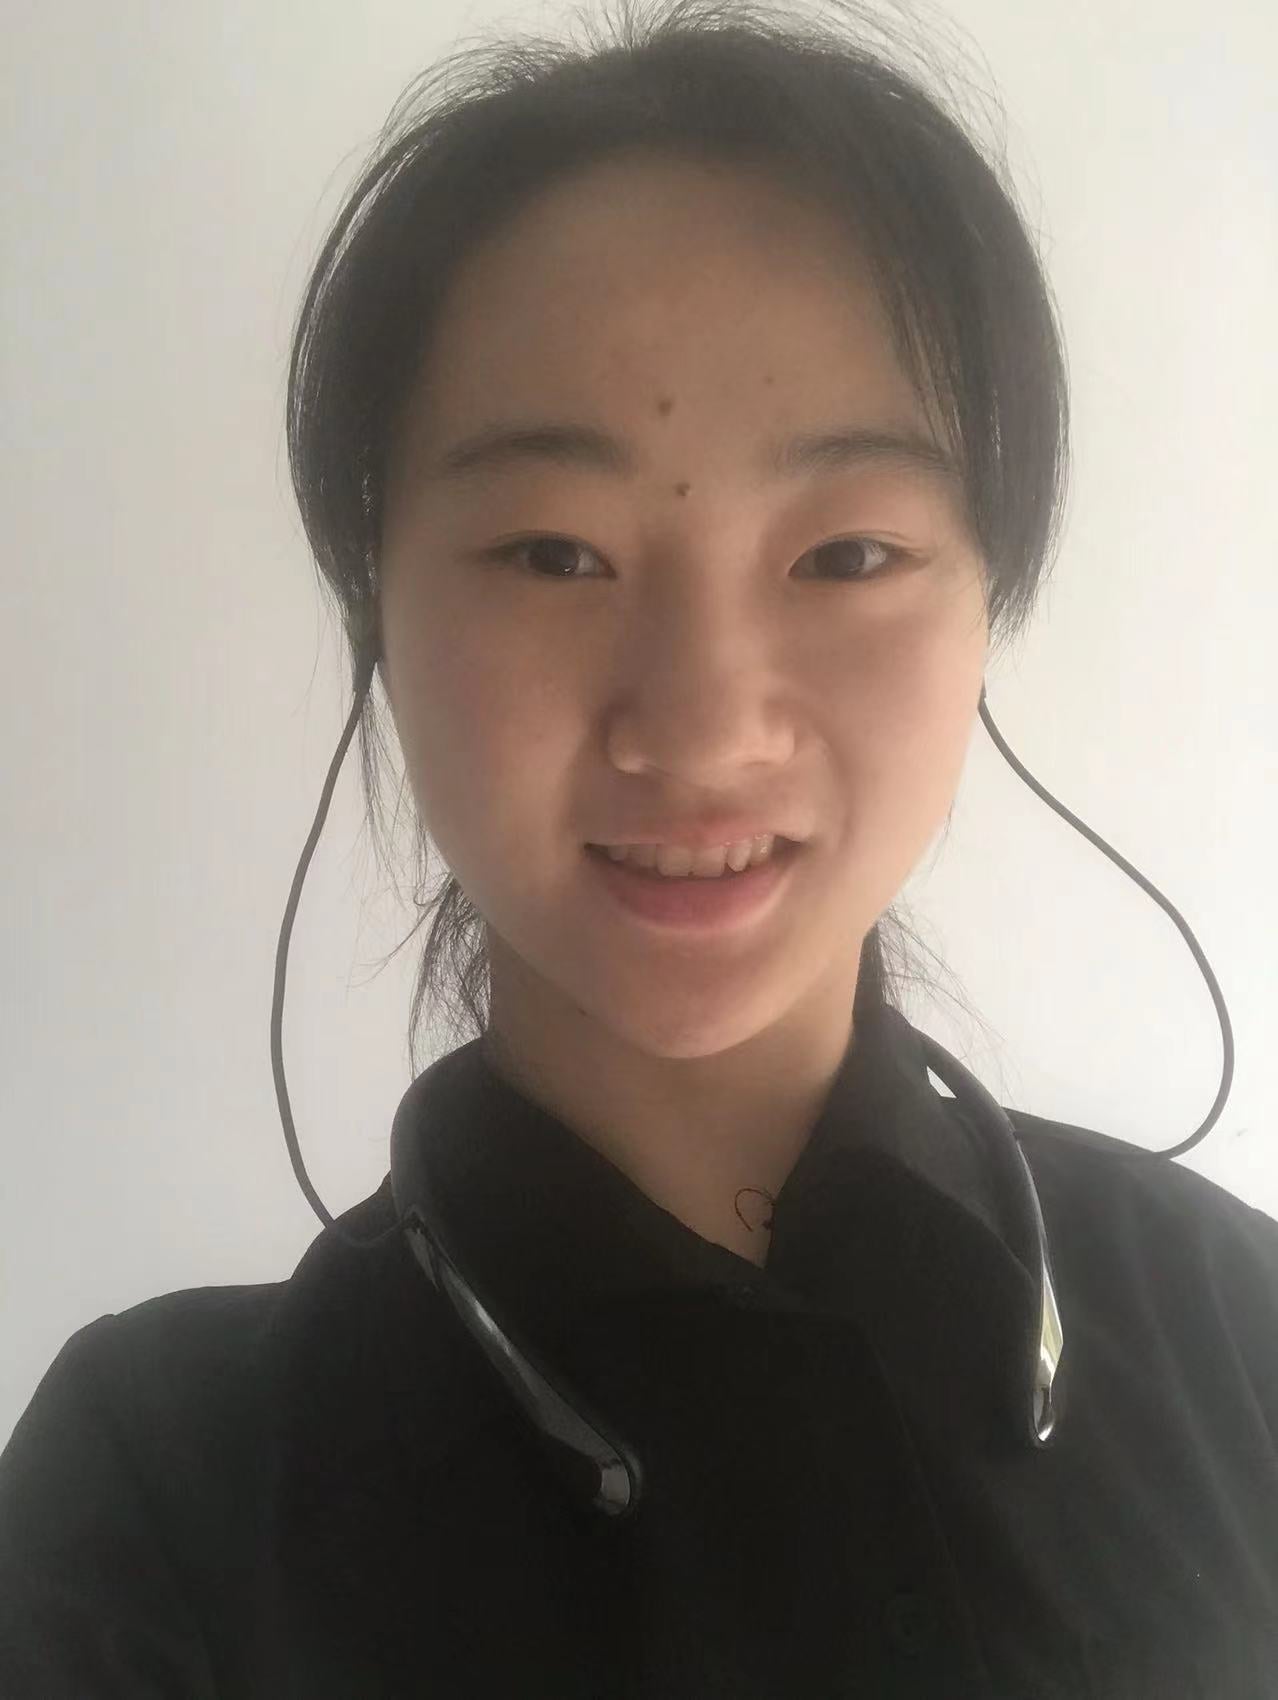 Ren Qing wearing Kite 2 during studies